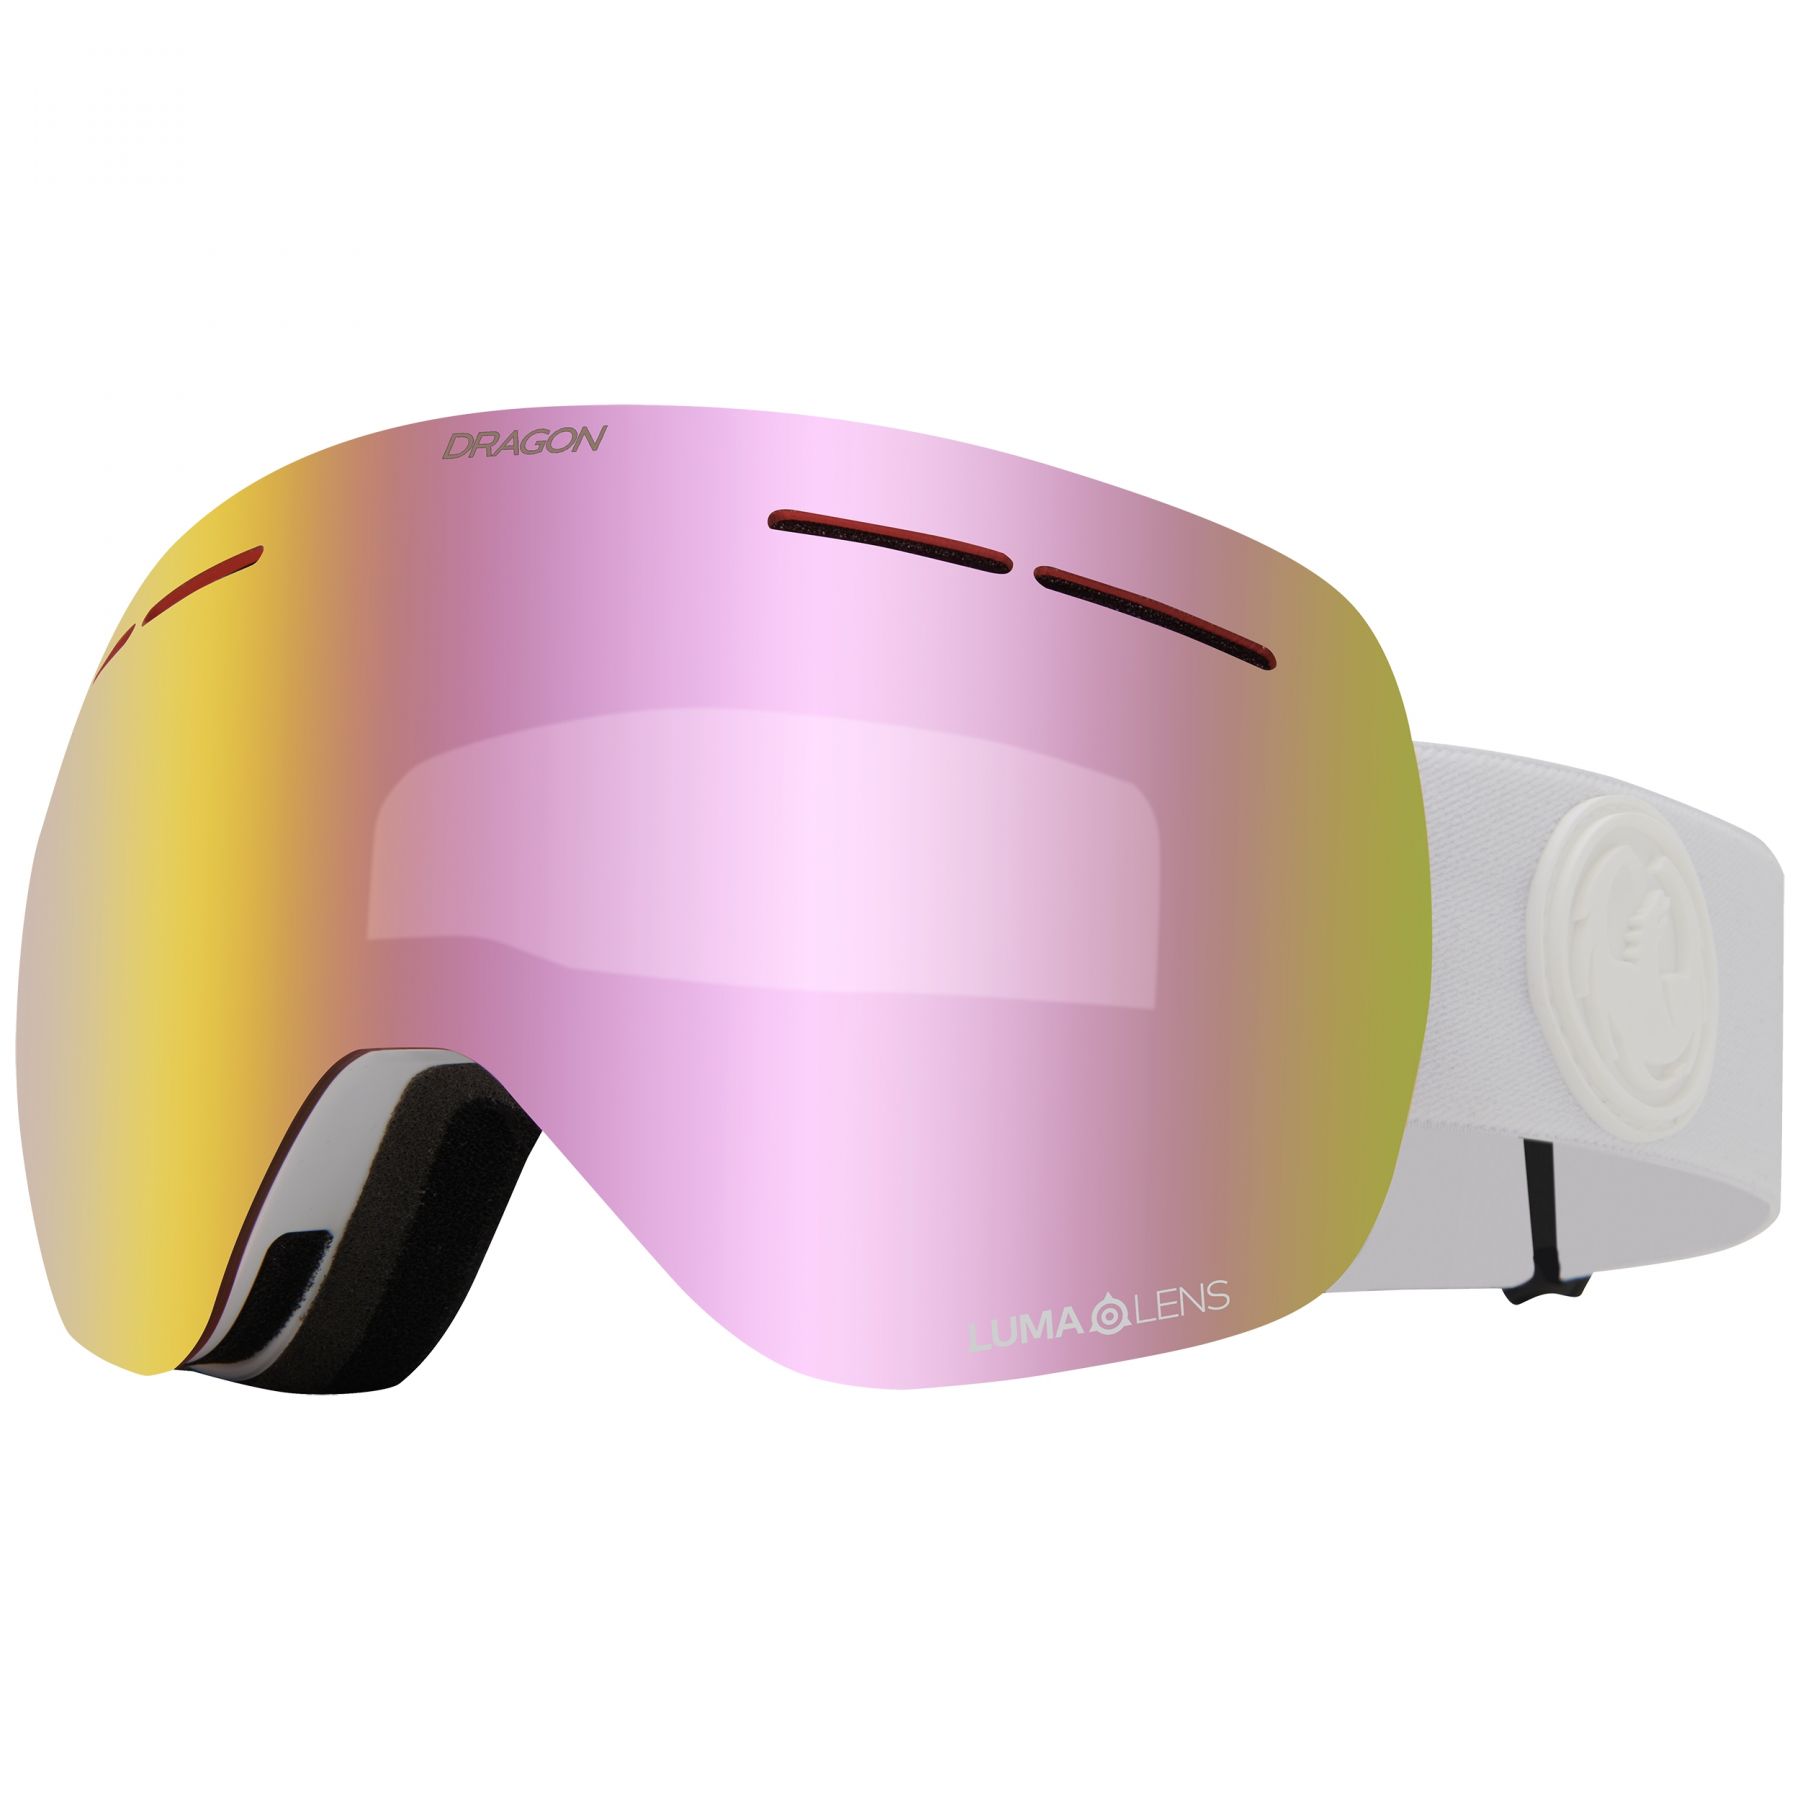 Brug Dragon X1s, skibriller, whiteout til en forbedret oplevelse